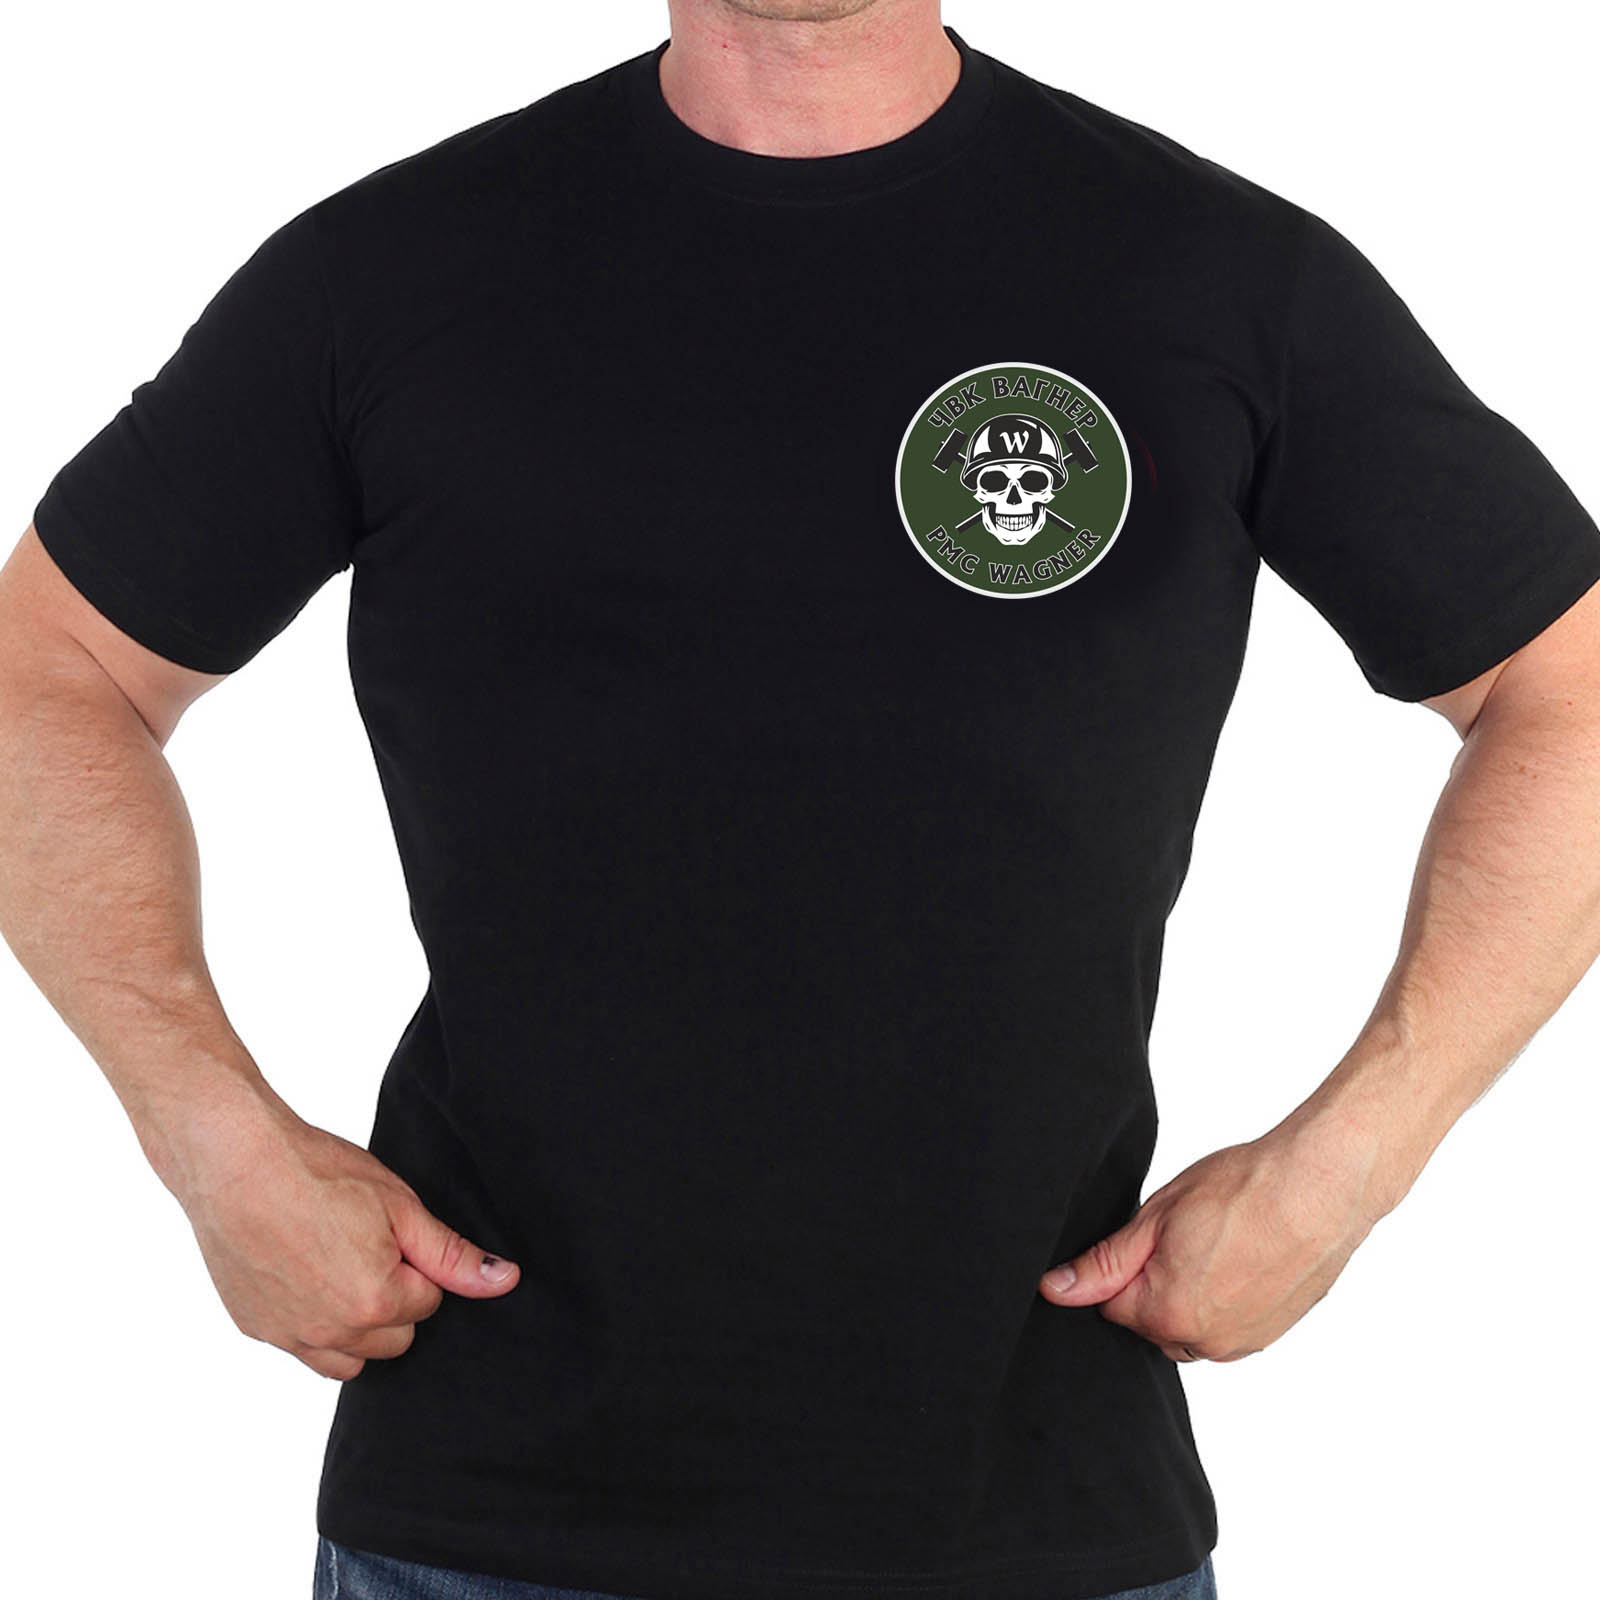 Купить черную крутую футболку с термонаклейкой ЧВК Вагнер с доставкой